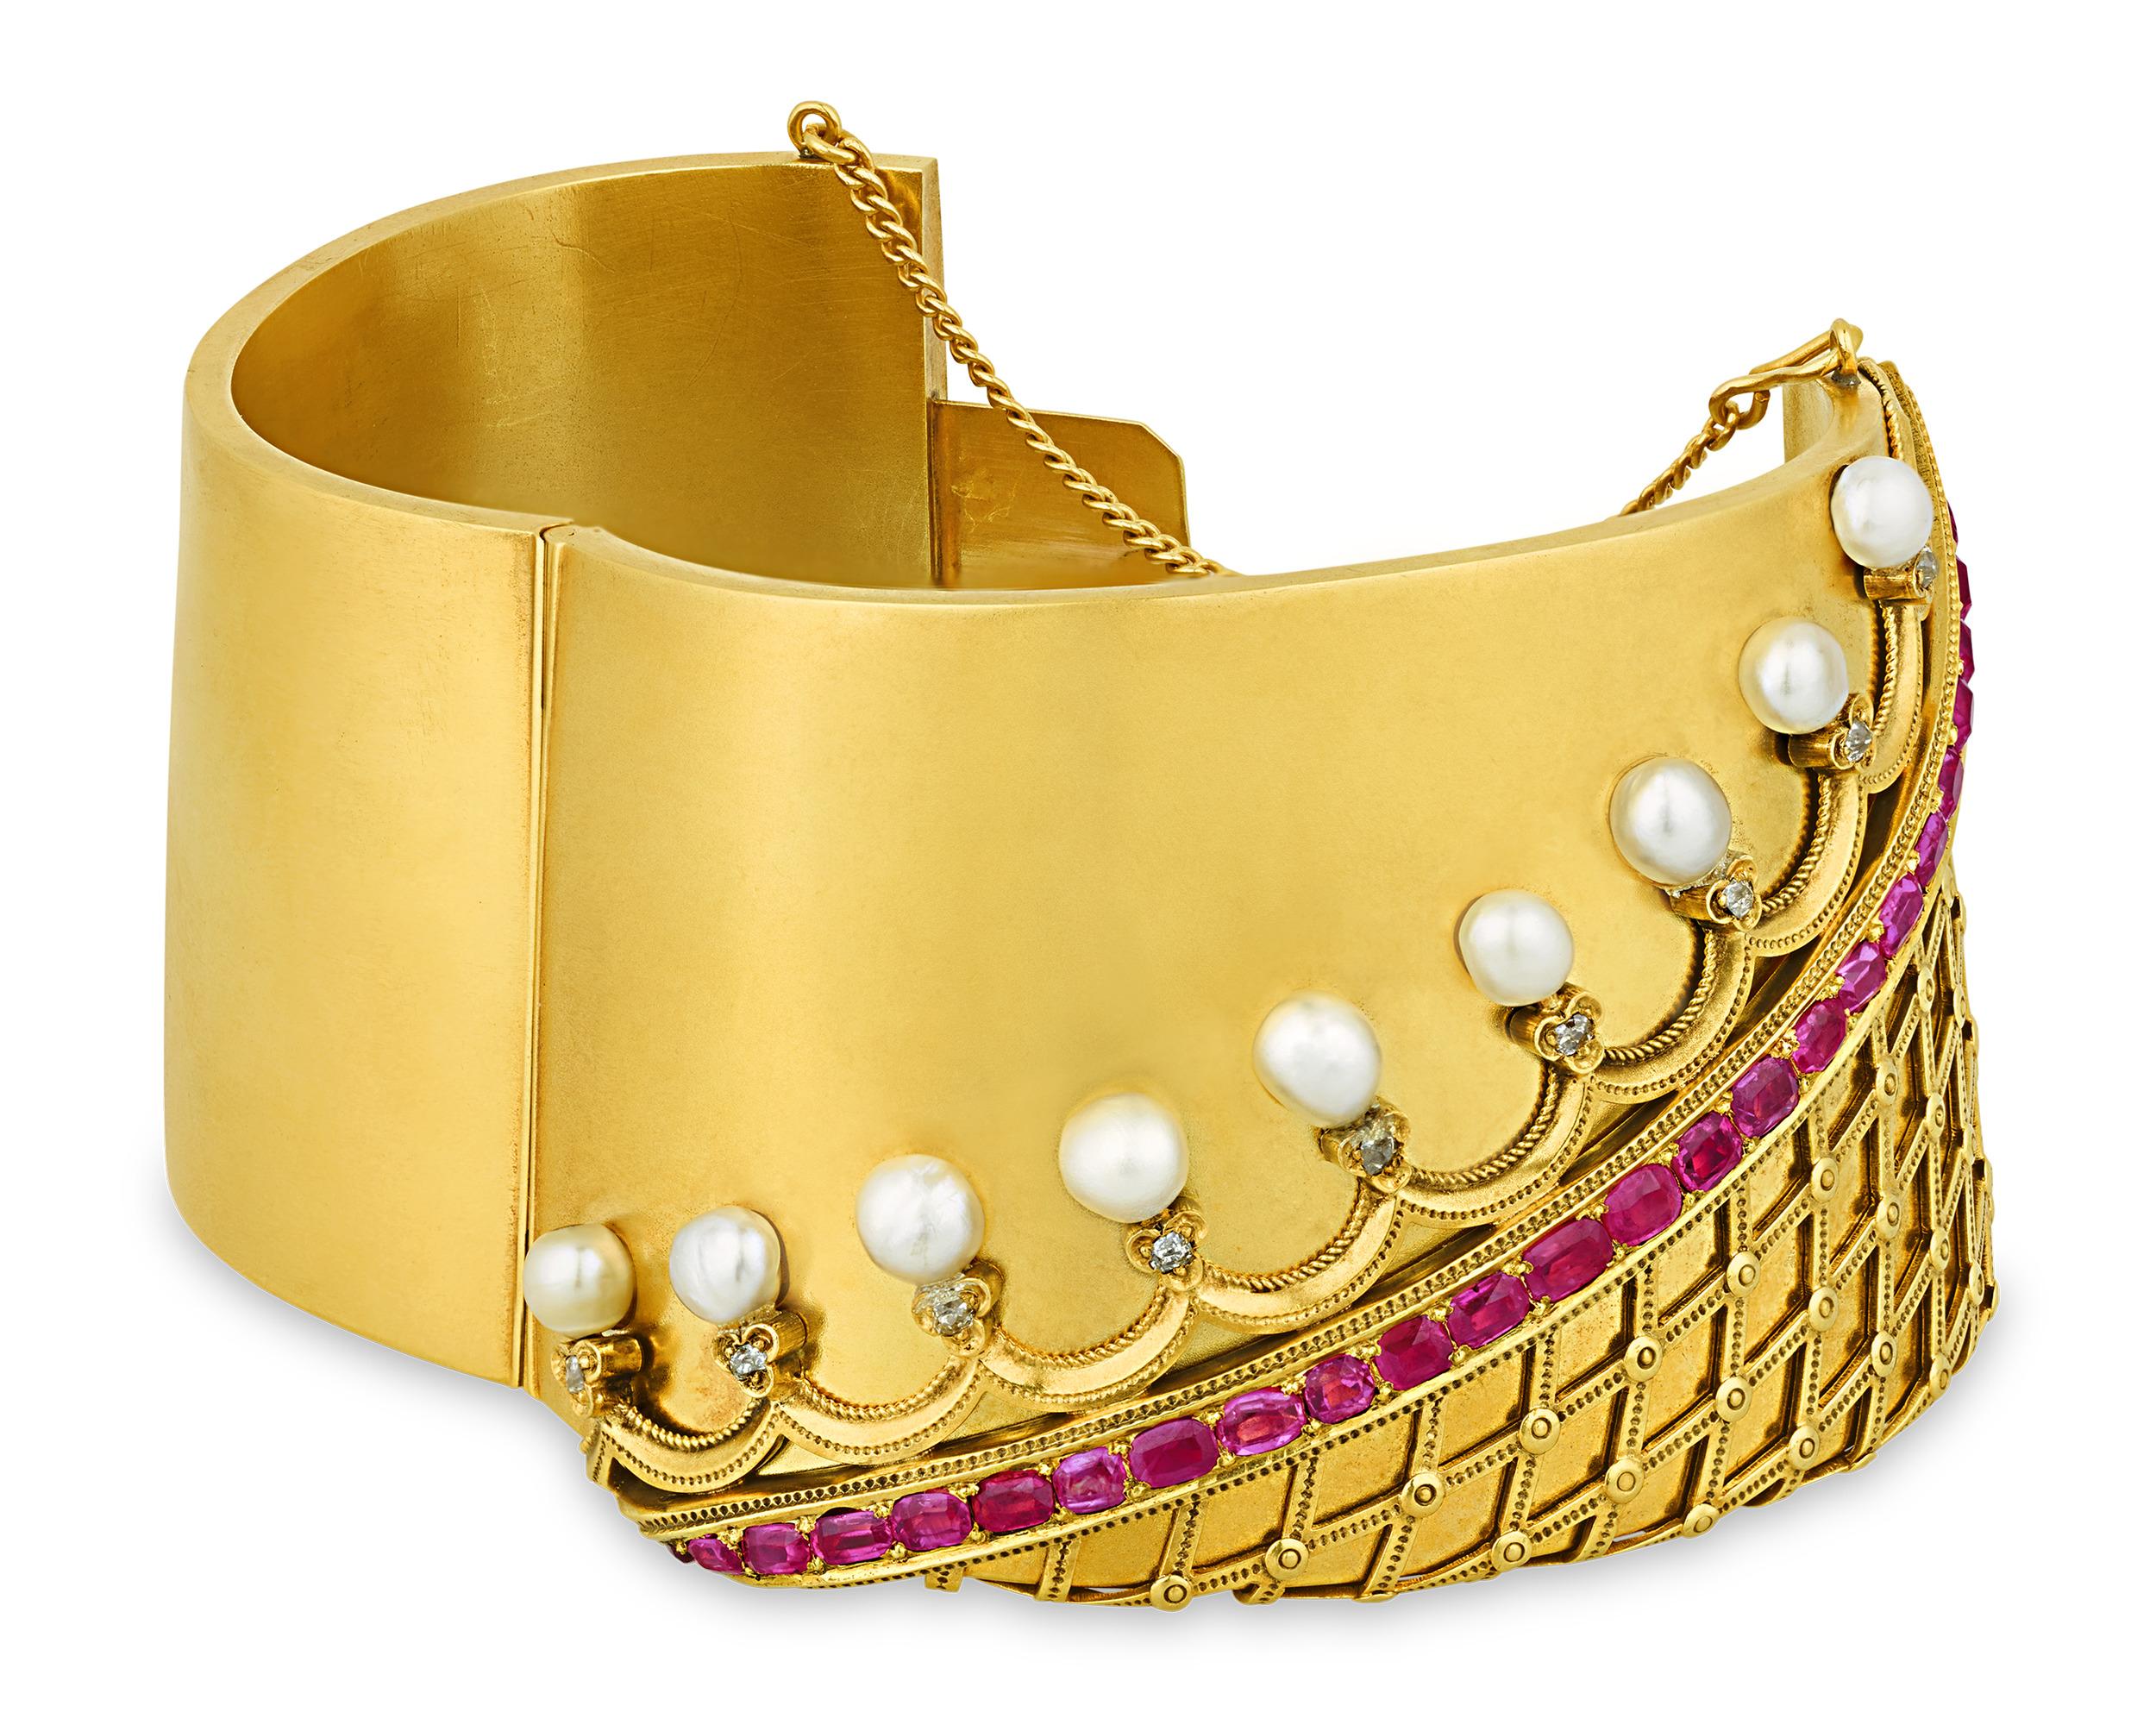 Ce bracelet manchette en perles et rubis incarne le raffinement classique. Le bracelet en or 14 carats ressemble à la manchette brodée d'une robe de l'époque victorienne, avec une bordure rehaussée de perles naturelles brillantes et de diamants